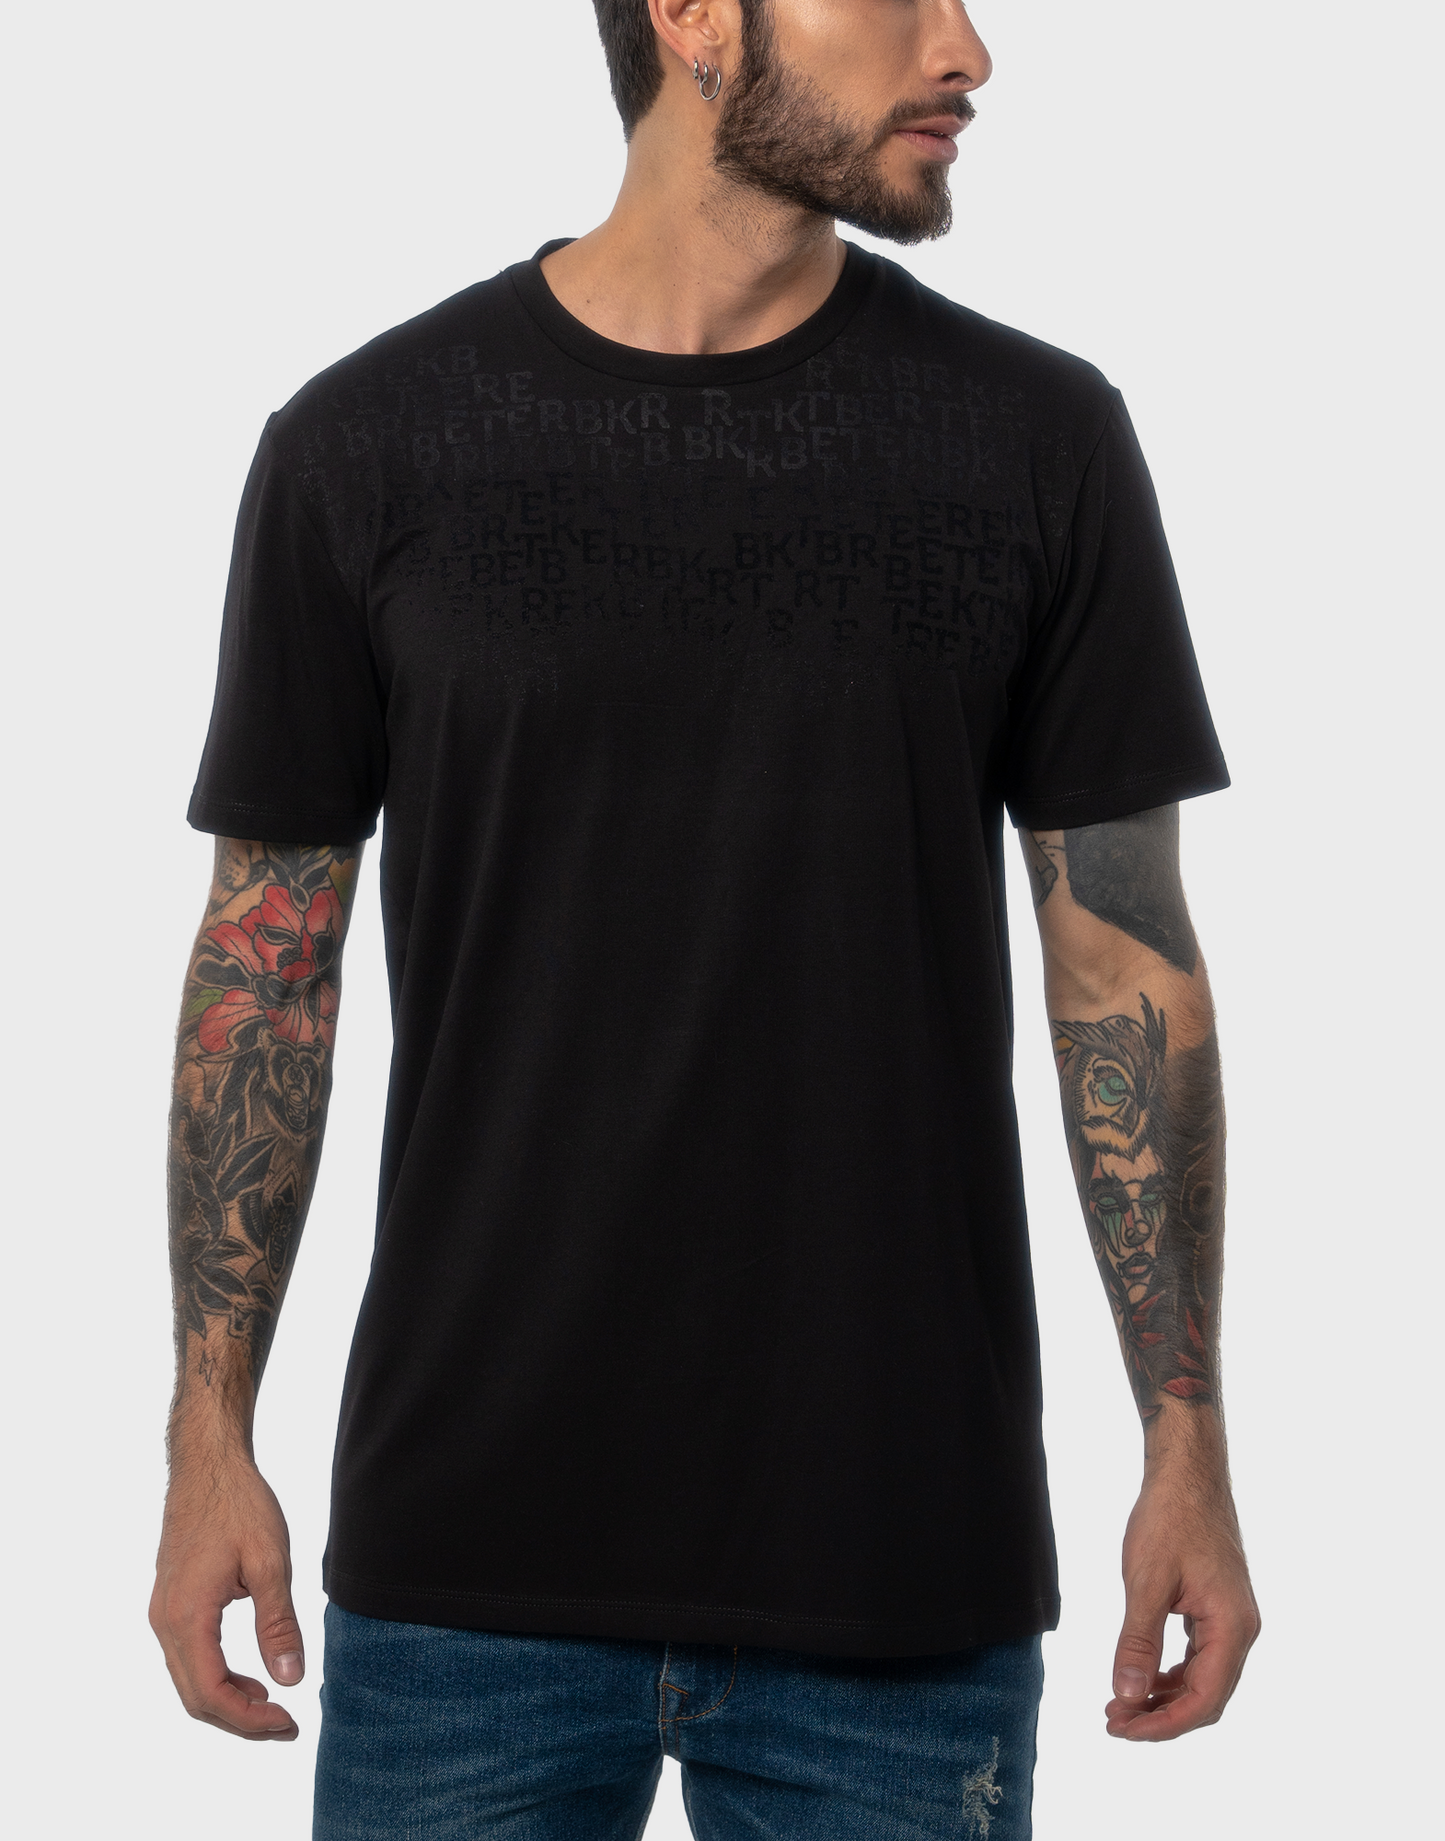 Camiseta hombre estampado negro - N/C